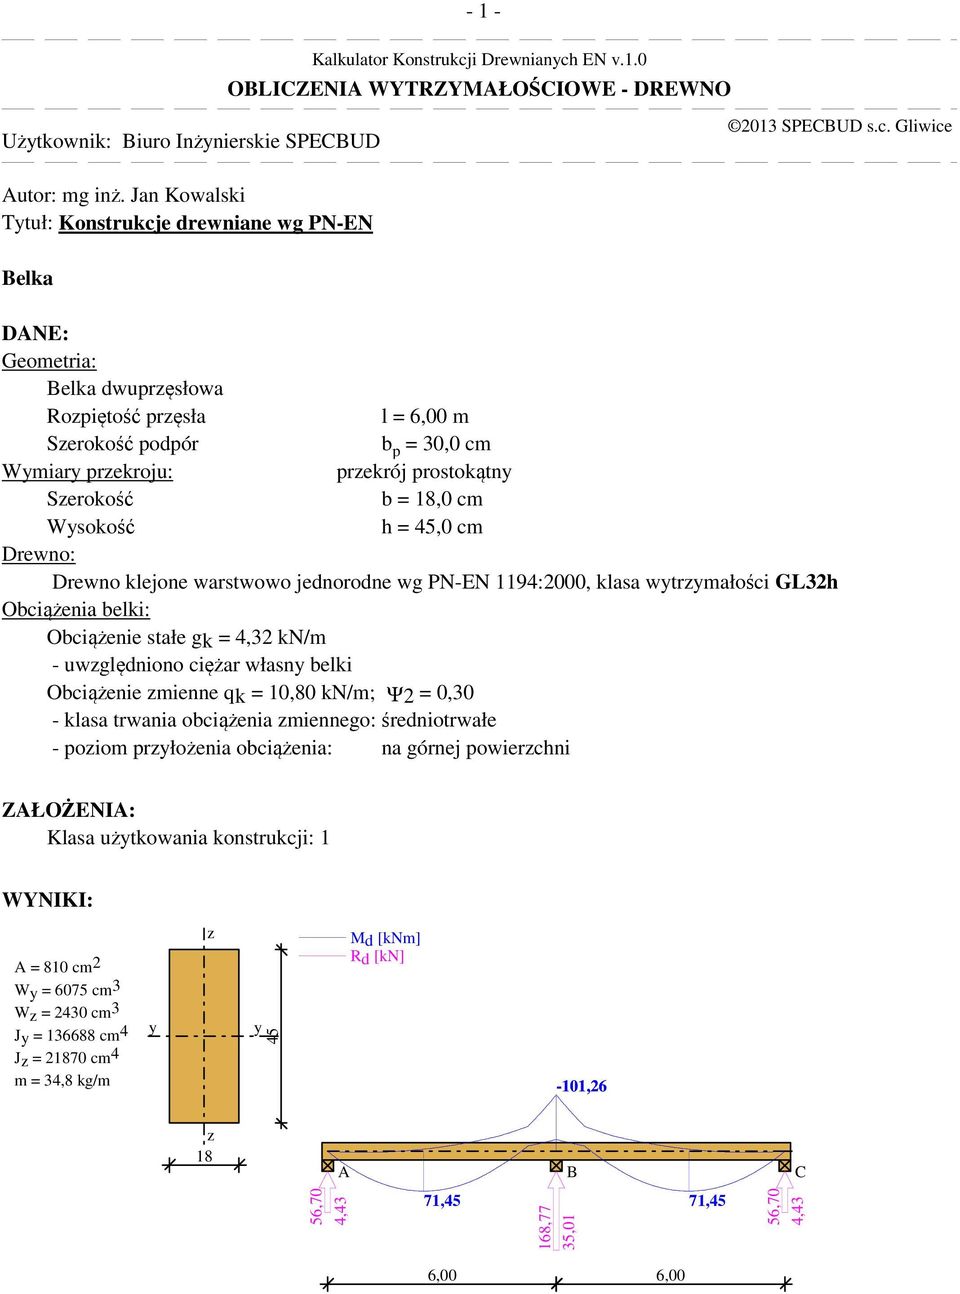 warstwowo jednorodne wg PN-EN 1194:2000, klasa wtrmałości GL32h Obciążenia belki: Obciążenie stałe gk = 4,32 kn/m - uwględniono ciężar własn belki Obciążenie mienne qk = 10,80 kn/m; Ψ2 = 0,30 - klasa